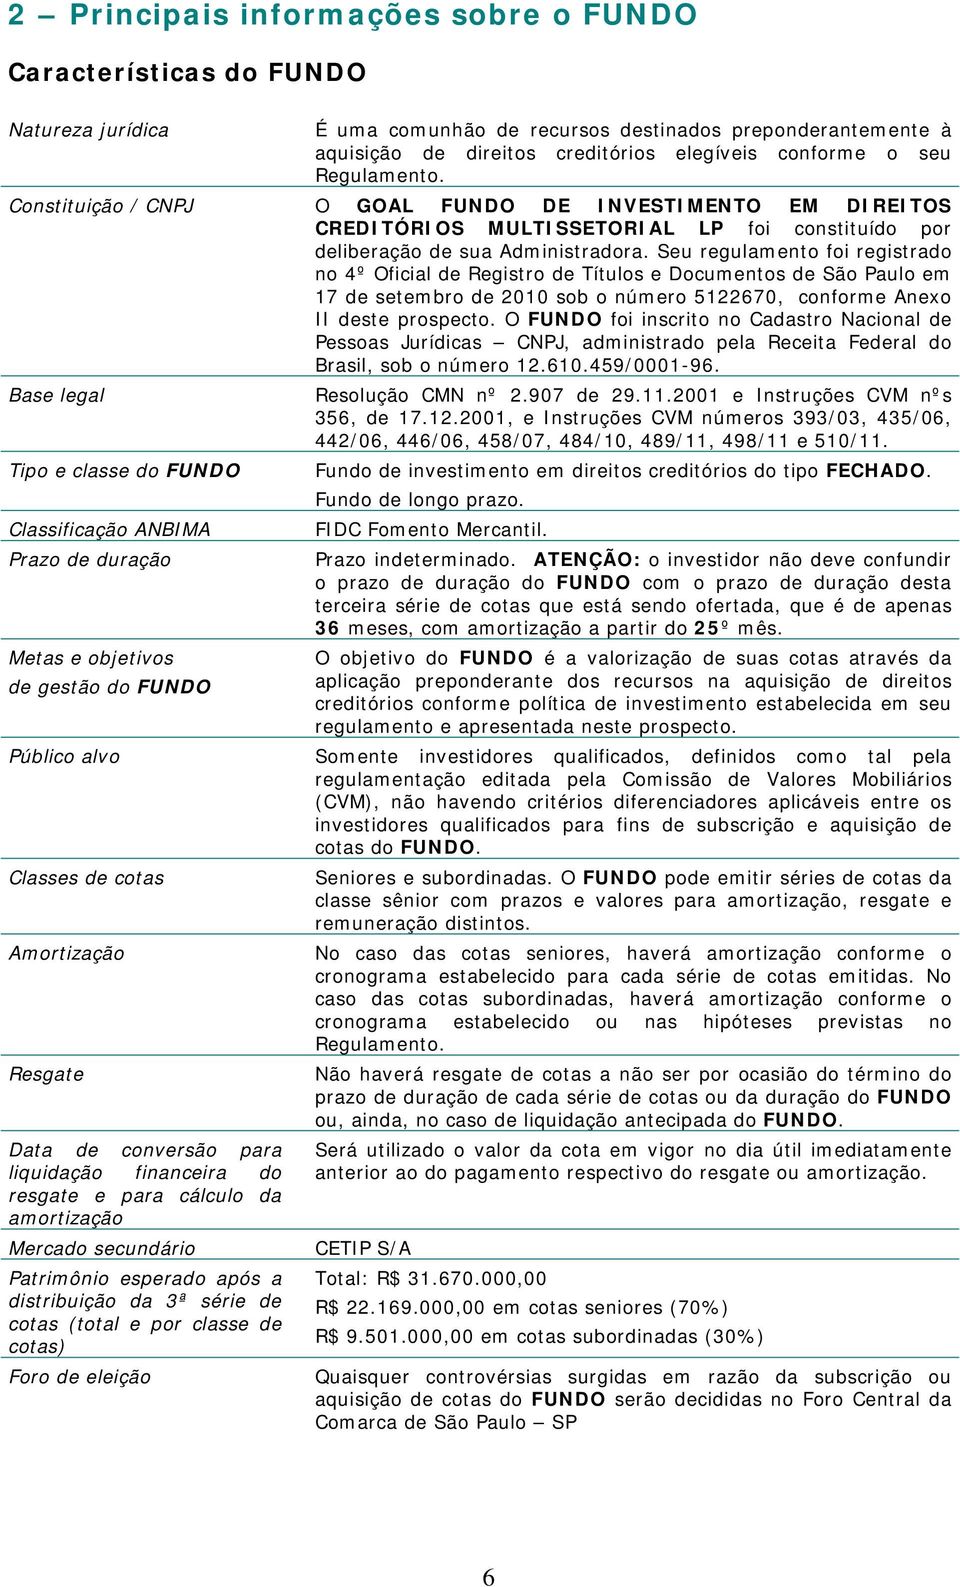 Seu regulamento foi registrado no 4º Oficial de Registro de Títulos e Documentos de São Paulo em 17 de setembro de 2010 sob o número 5122670, conforme Anexo II deste prospecto.